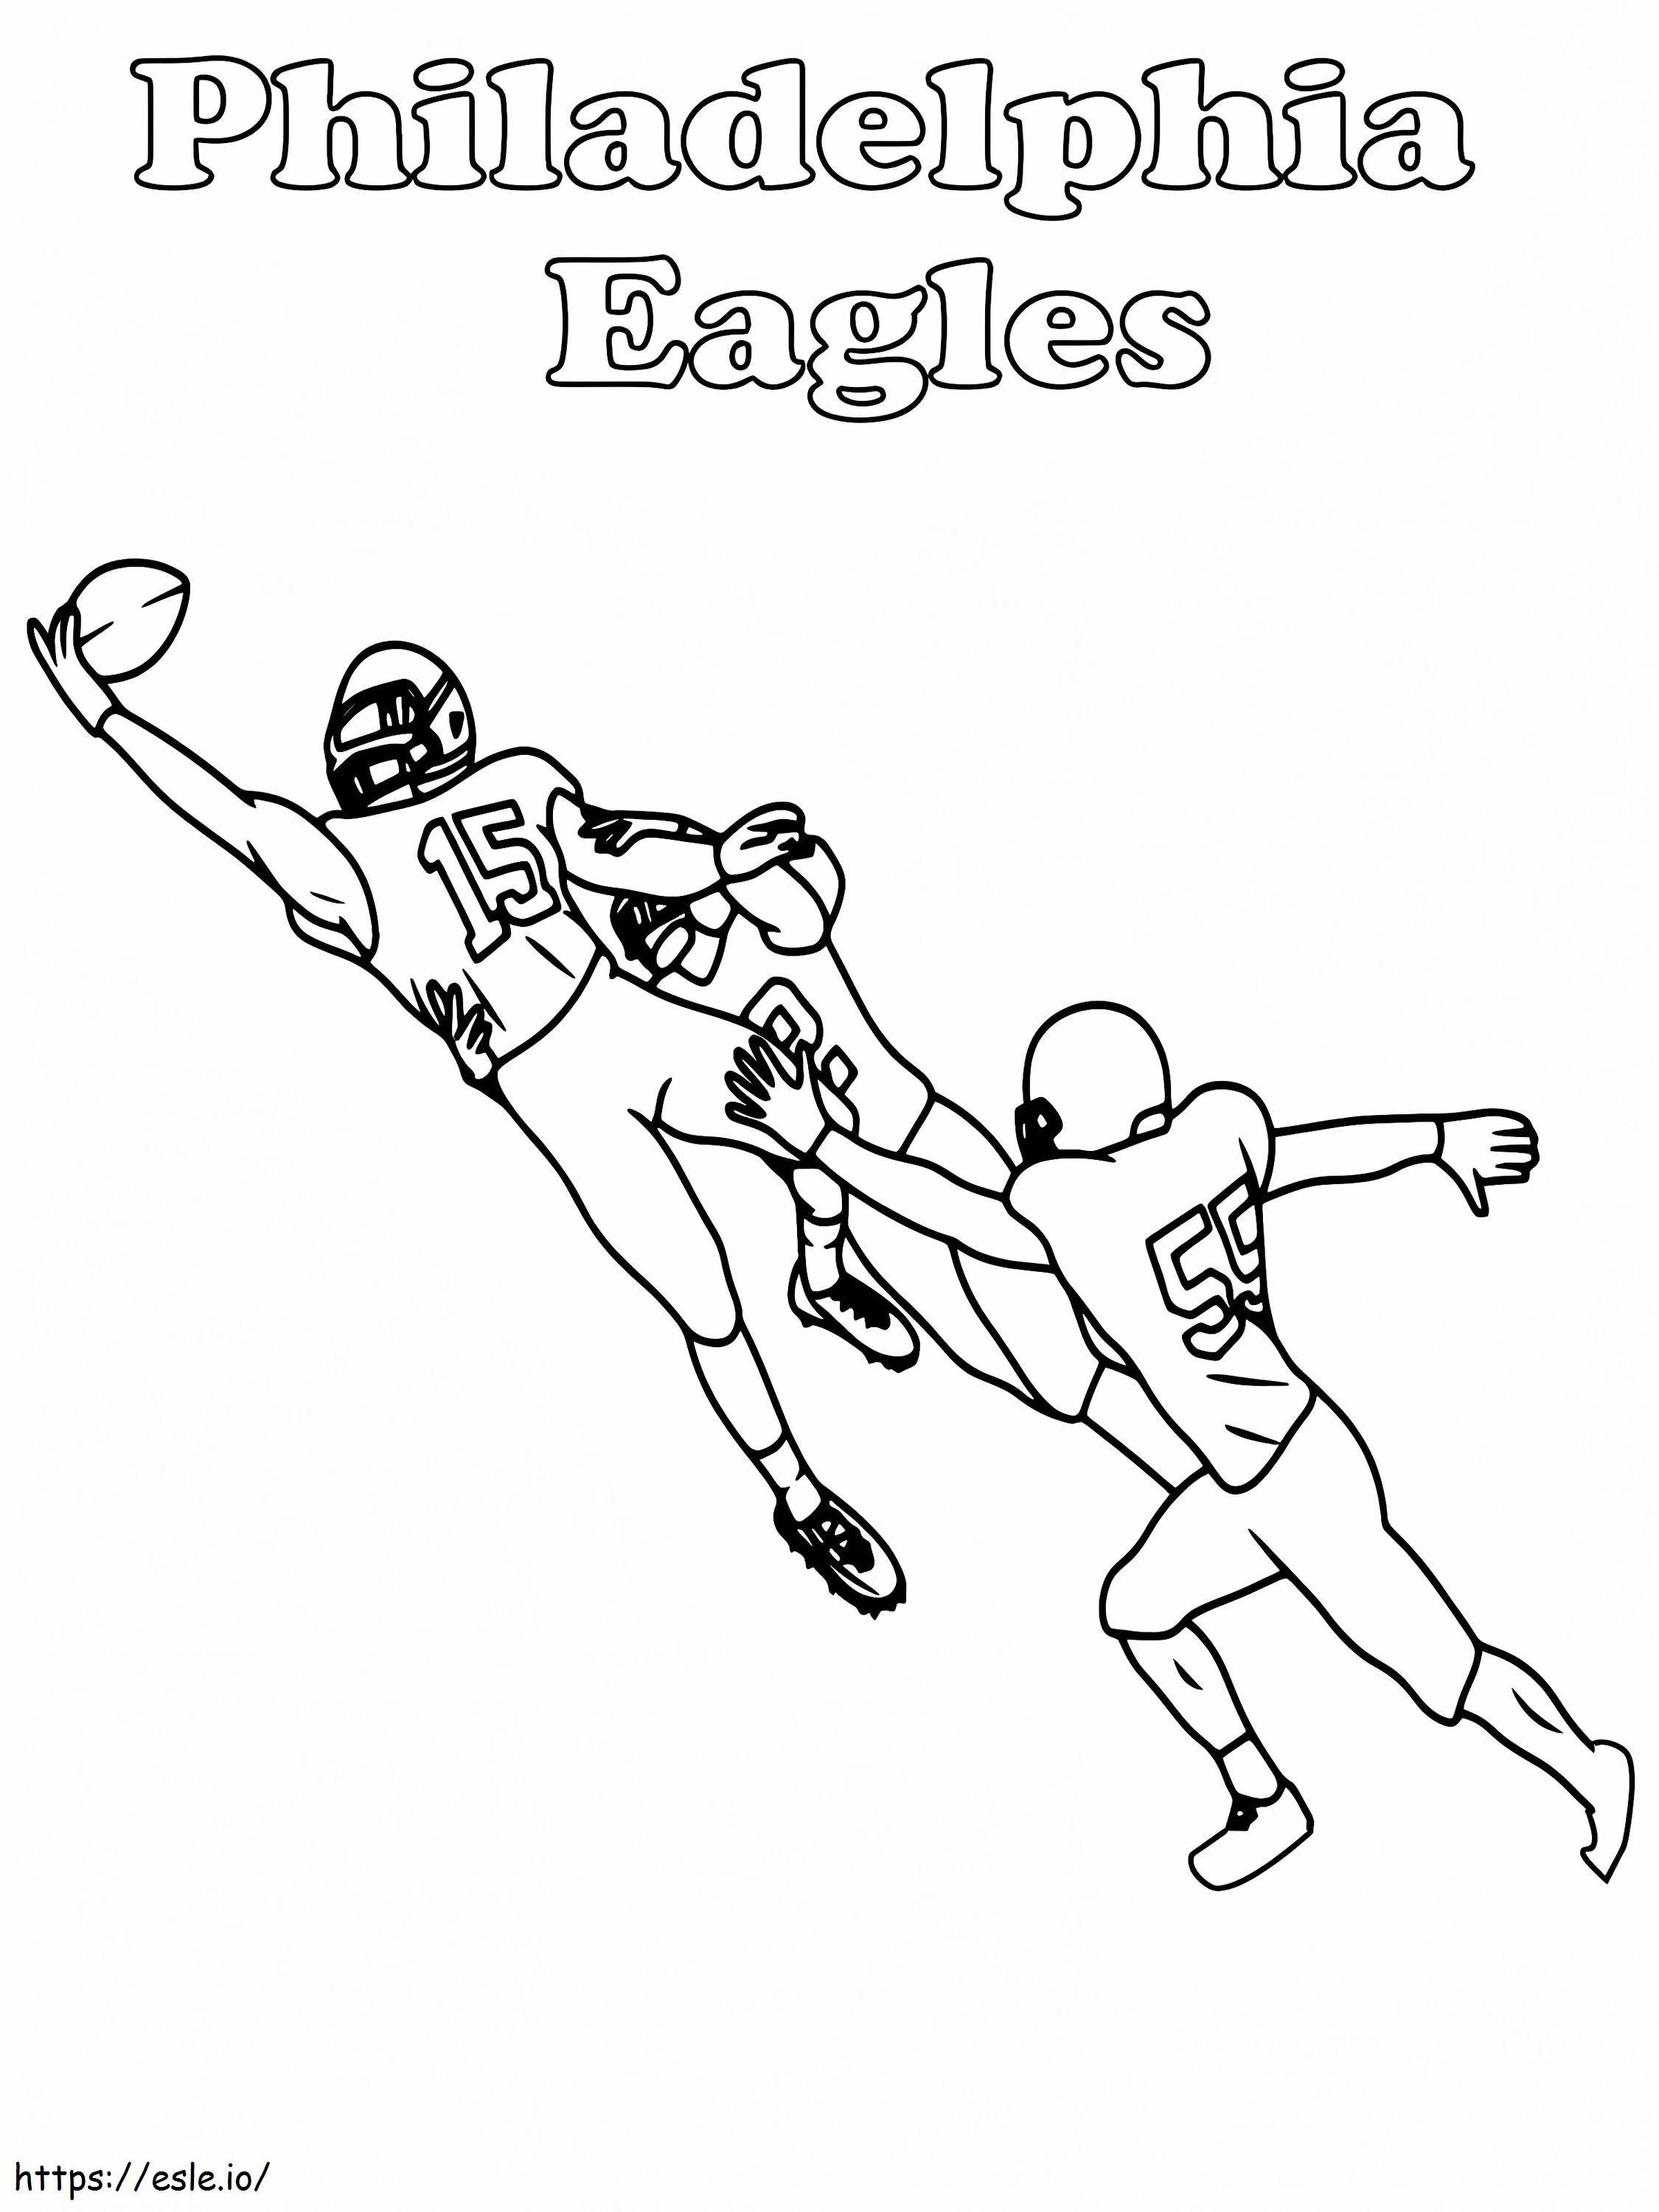 Captura do jogador do Philadelphia Eagles para colorir